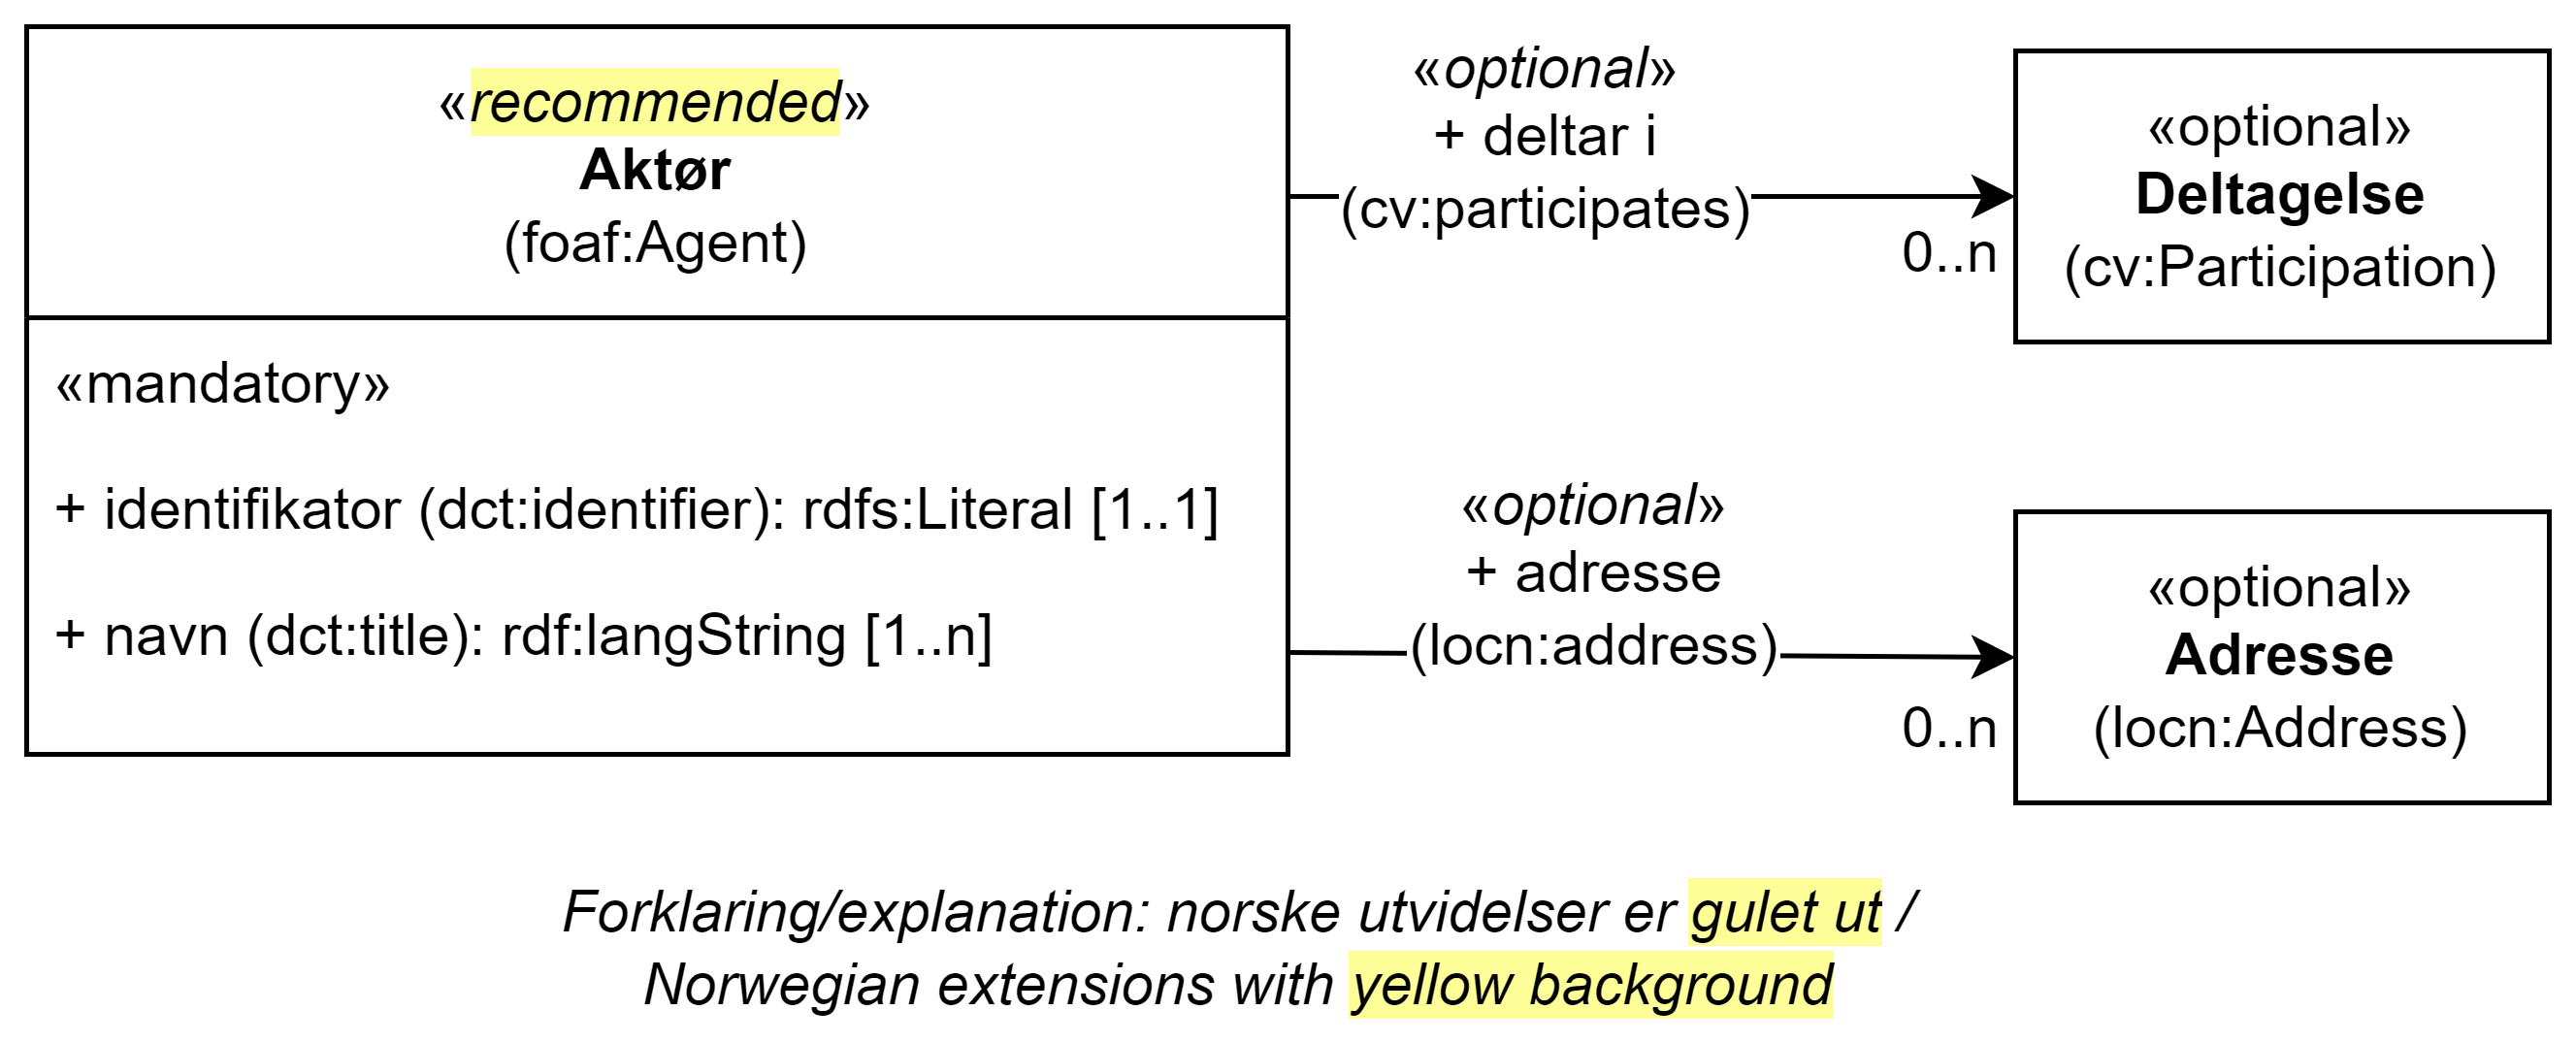 UML-diagram med klassen Aktør, dens egenskaper og dens relasjoner til to andre klasser. Norske utvidelser er gulet ut. Innholdet i diagrammet er forklart i teksten.